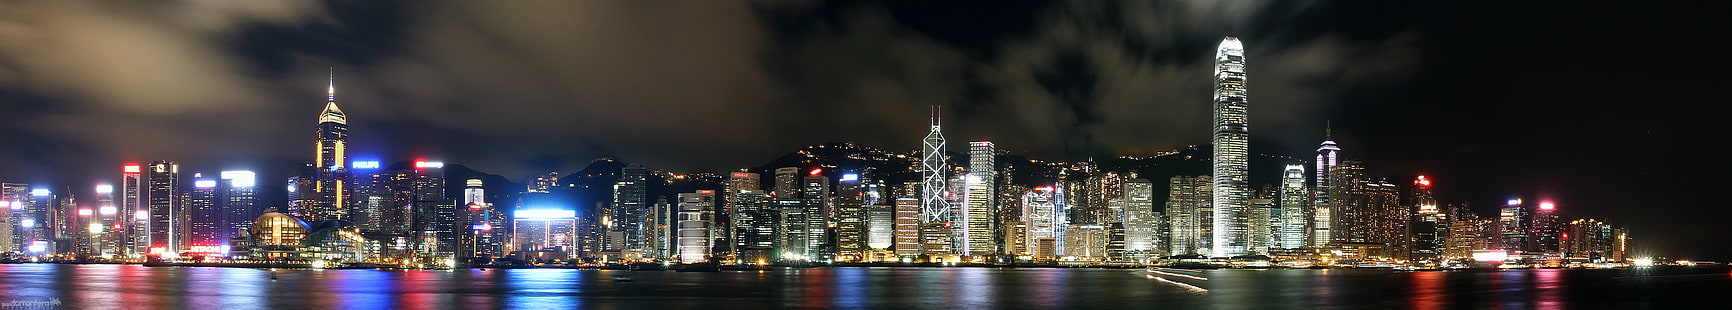 Панорамная съемка фотографий зданий в ночное время, Гонконг, Гонконг, Ноктурна, де Гонконг, Гонконг, панорама, съемка, фотографии, здания, ночь, Азия, Китай, панорамный, пейзаж, город, горизонт, Рио, река, вода,размышления, городской, удивительный, капитализм, долго, Ларга, снаряжение, я мой, премиум, городской пейзаж, городской горизонт, небоскреб, городская сцена, центр города, известное место, архитектура, гавань, освещенная, HD обои HD wallpaper